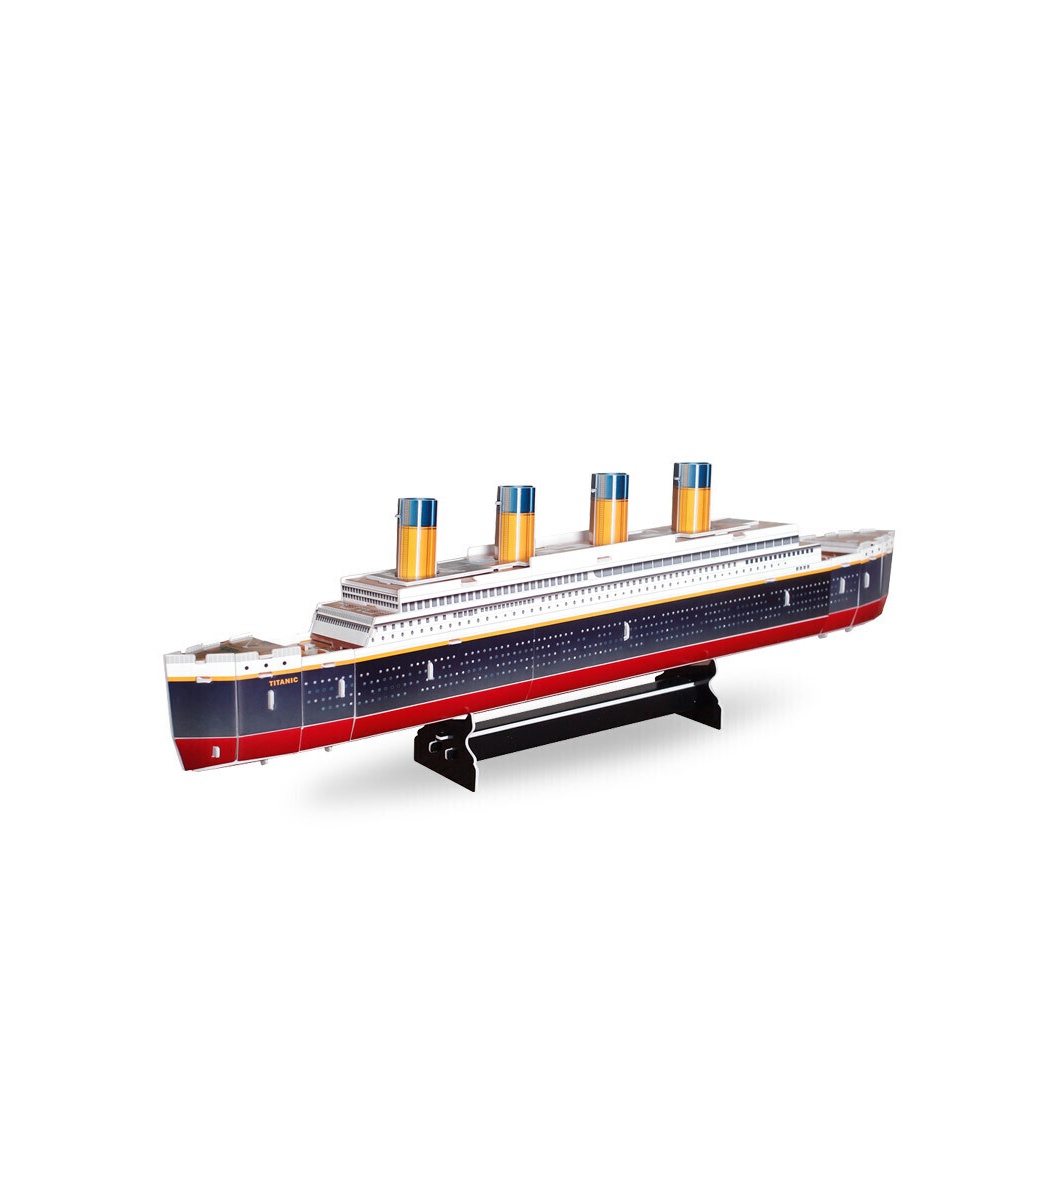 Cubicfun 3D Puzzle Titanic Ship T4012h Model Building Kits